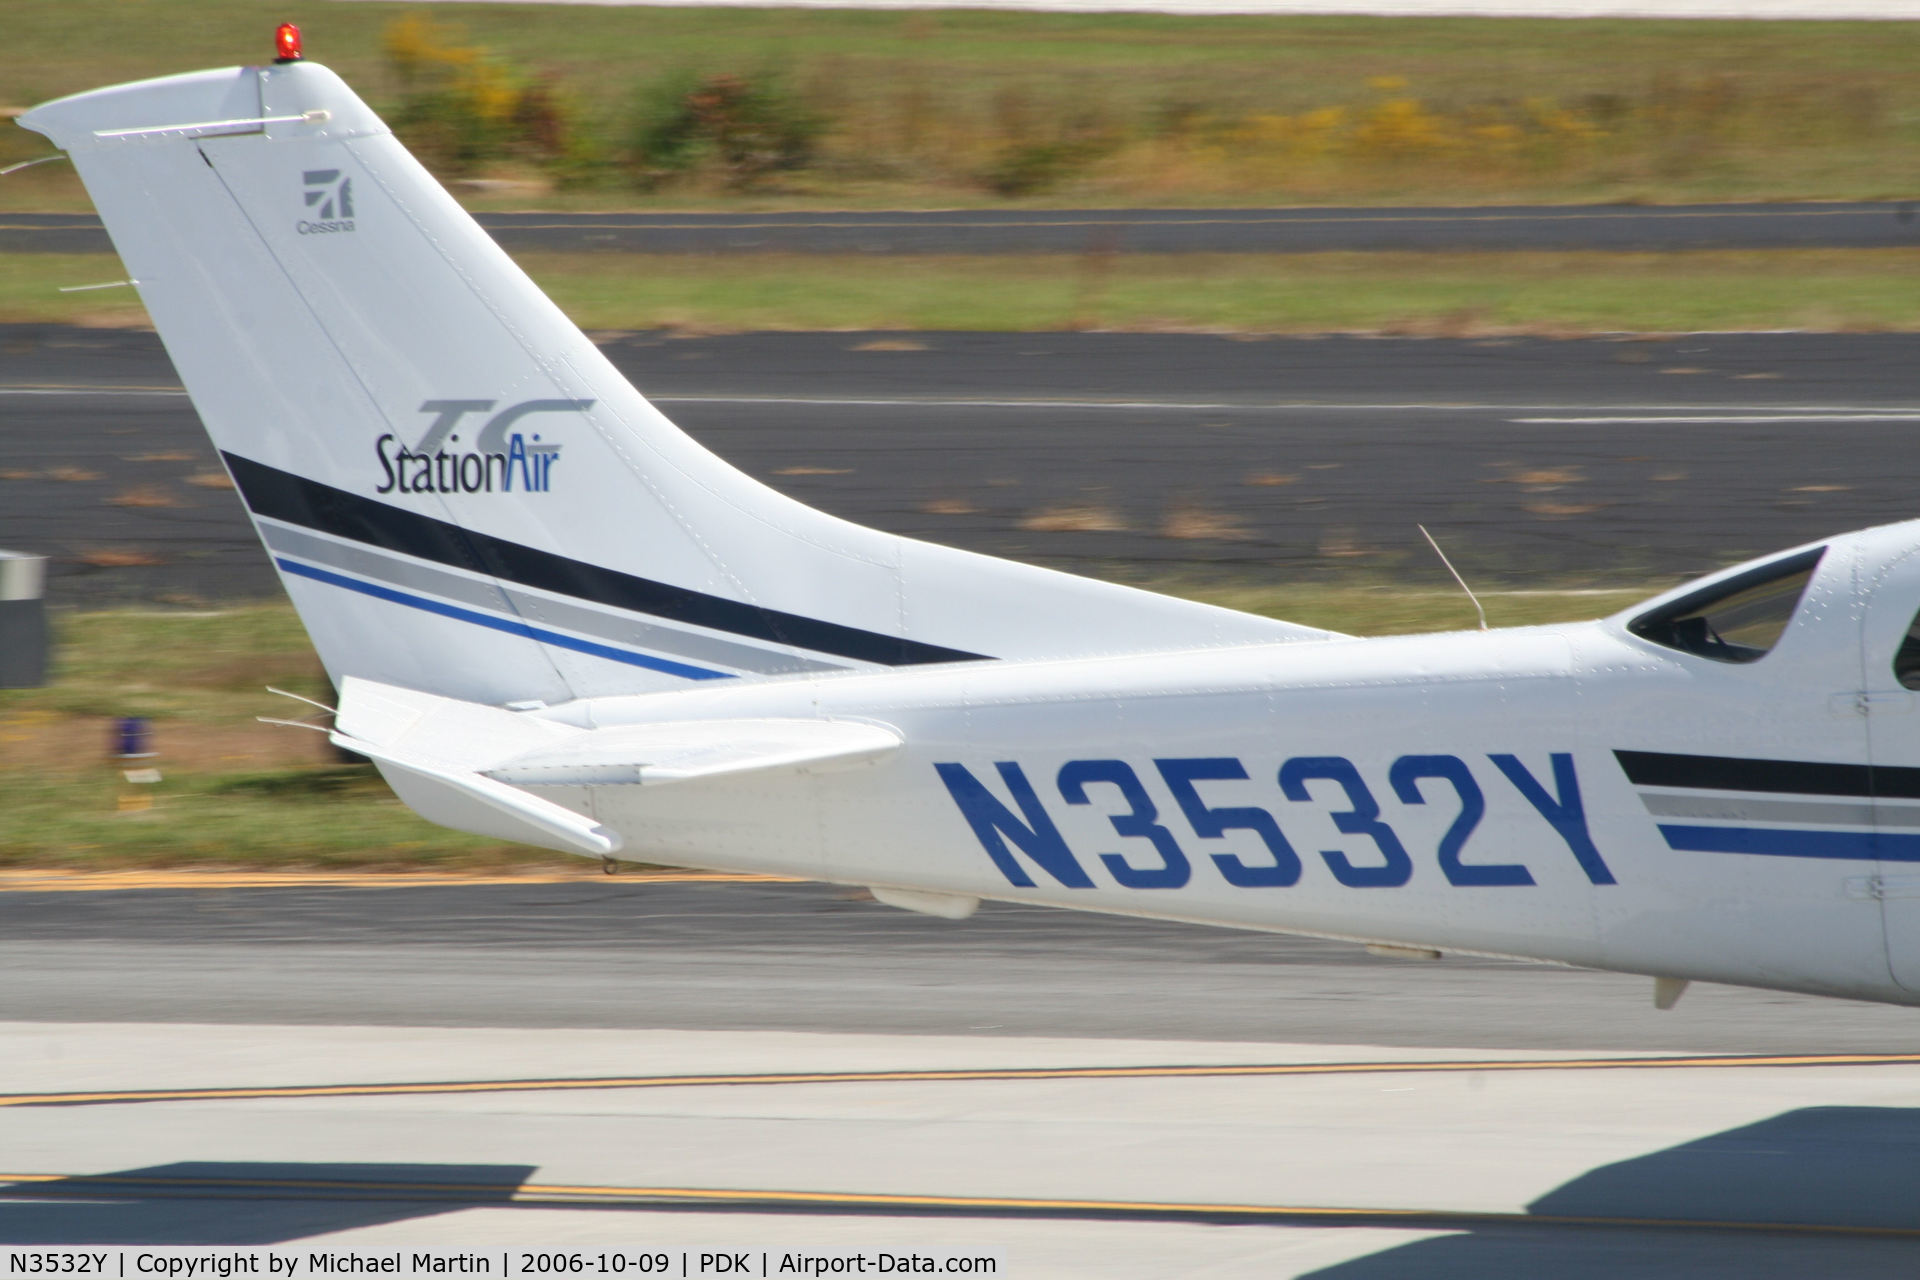 N3532Y, 2001 Cessna T206H Turbo Stationair C/N T20608290, Tail Numbers